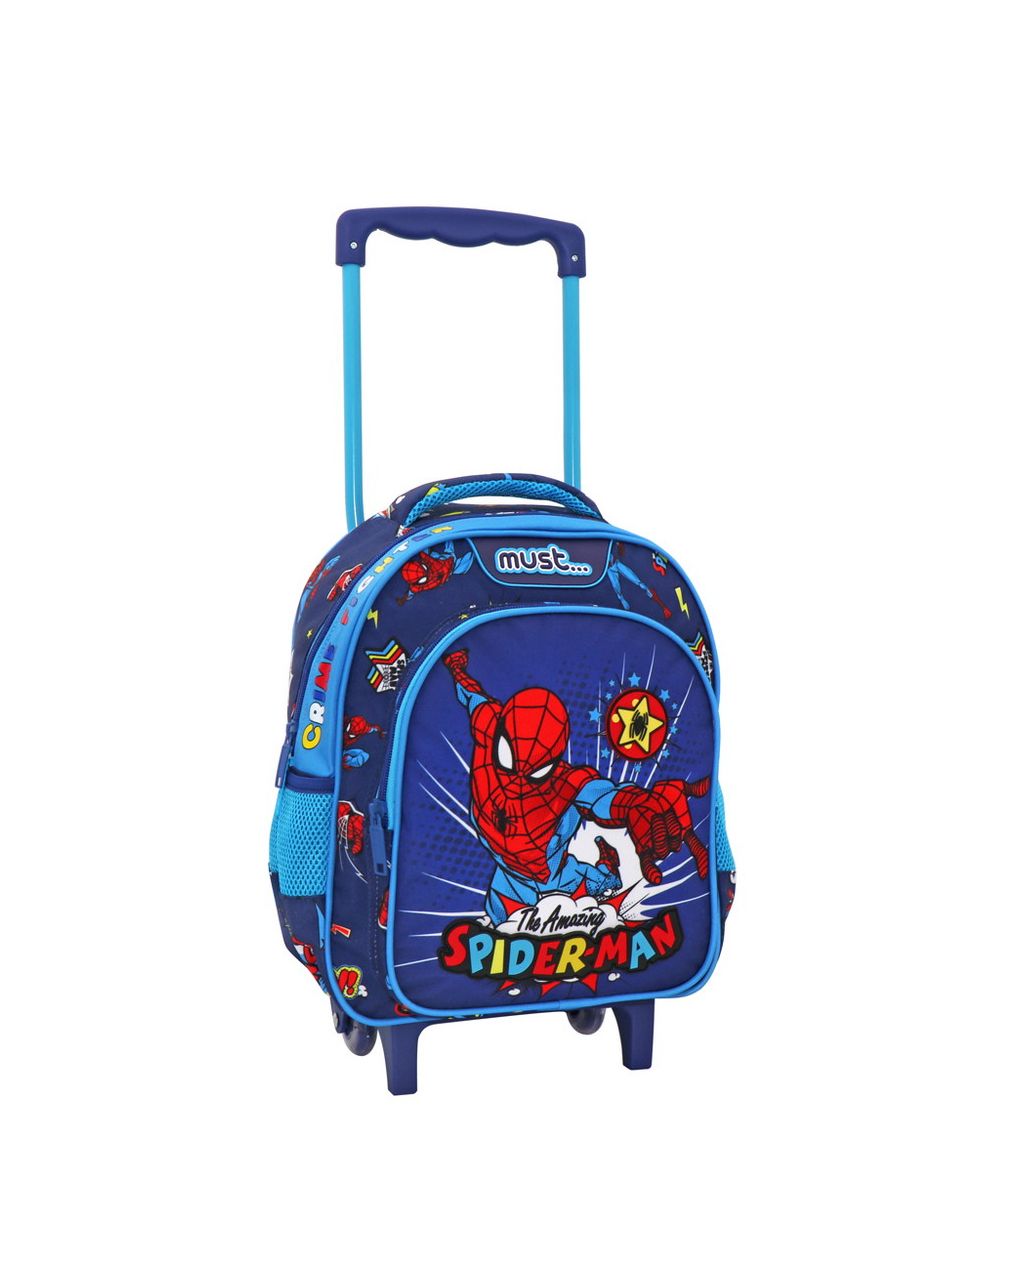 σχολική τσάντα τρόλεϊ νηπίου spiderman the amazing must 2 θήκες  000508124 - must